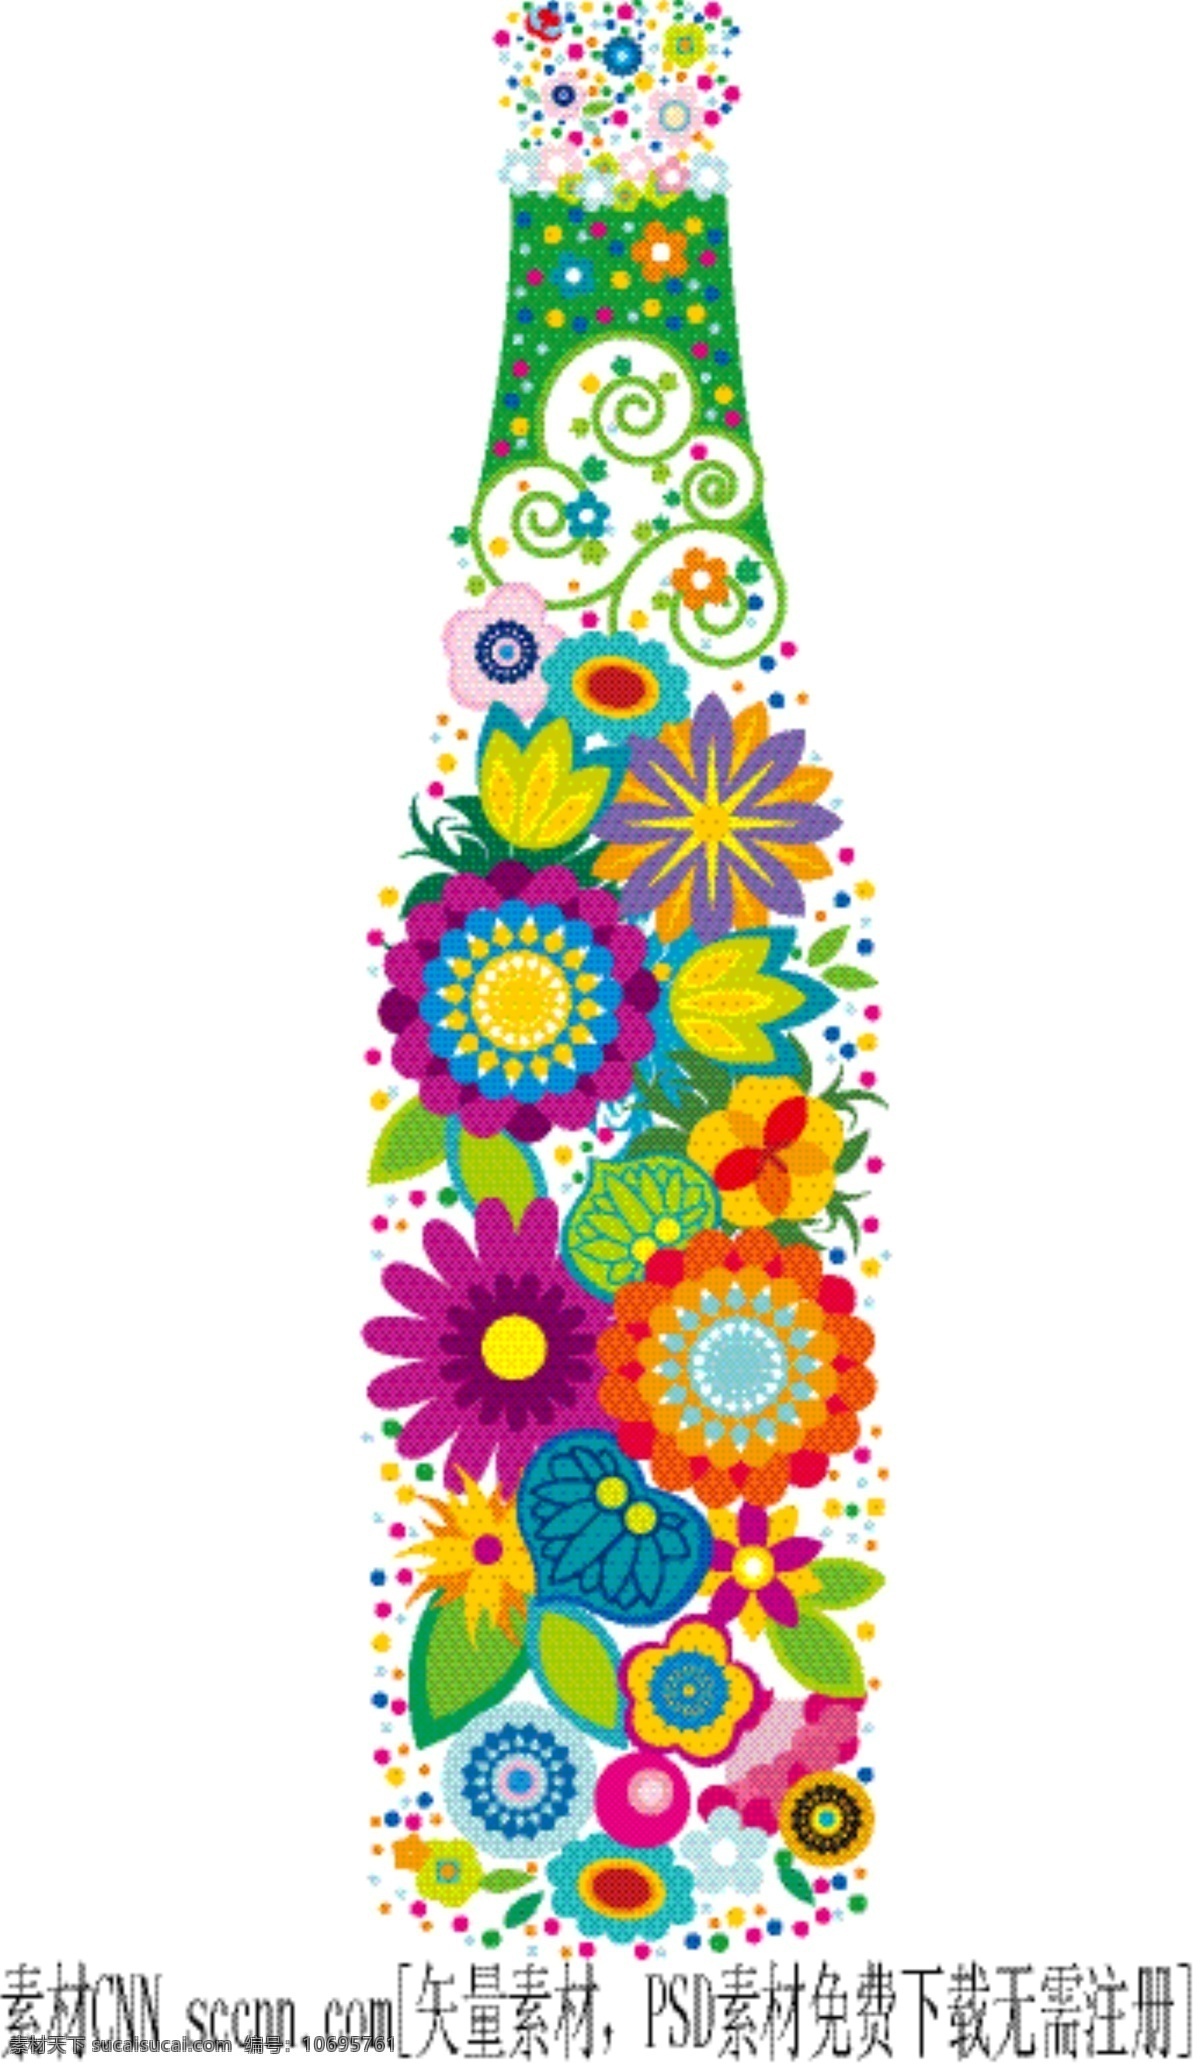 矢量 彩绘 花纹 创意 瓶子 彩绘花纹 创意瓶子 花朵 画稿 瓶子造型 矢量图 其他矢量图